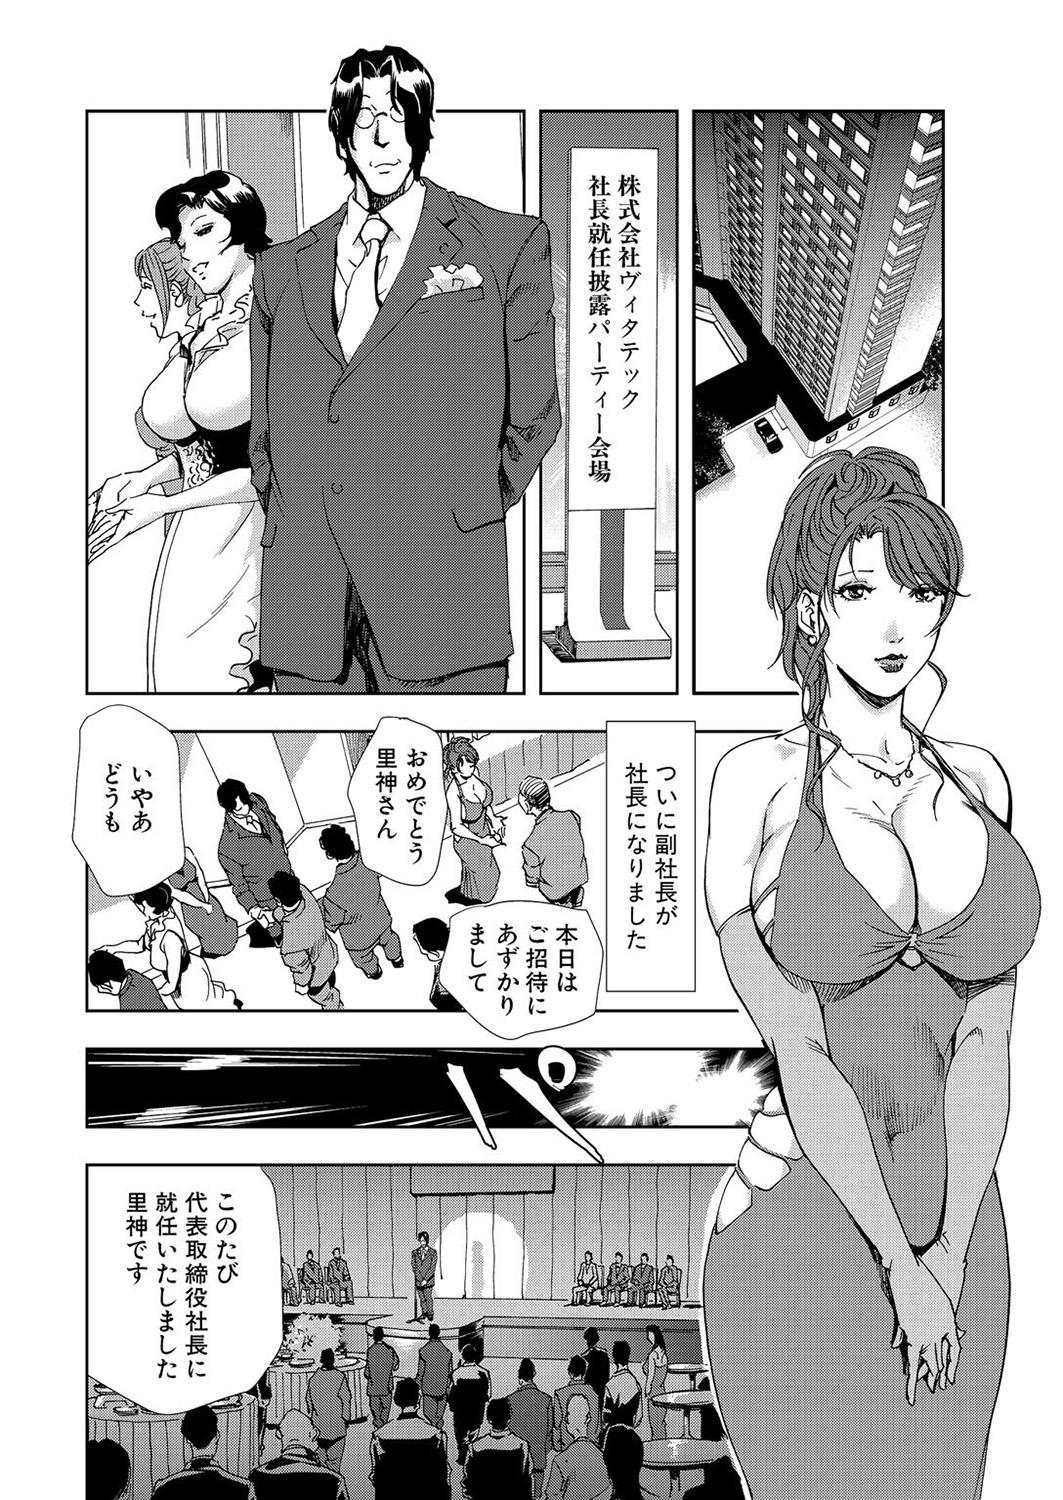 Slutty Nikuhisyo Yukiko 7 Duro - Page 4